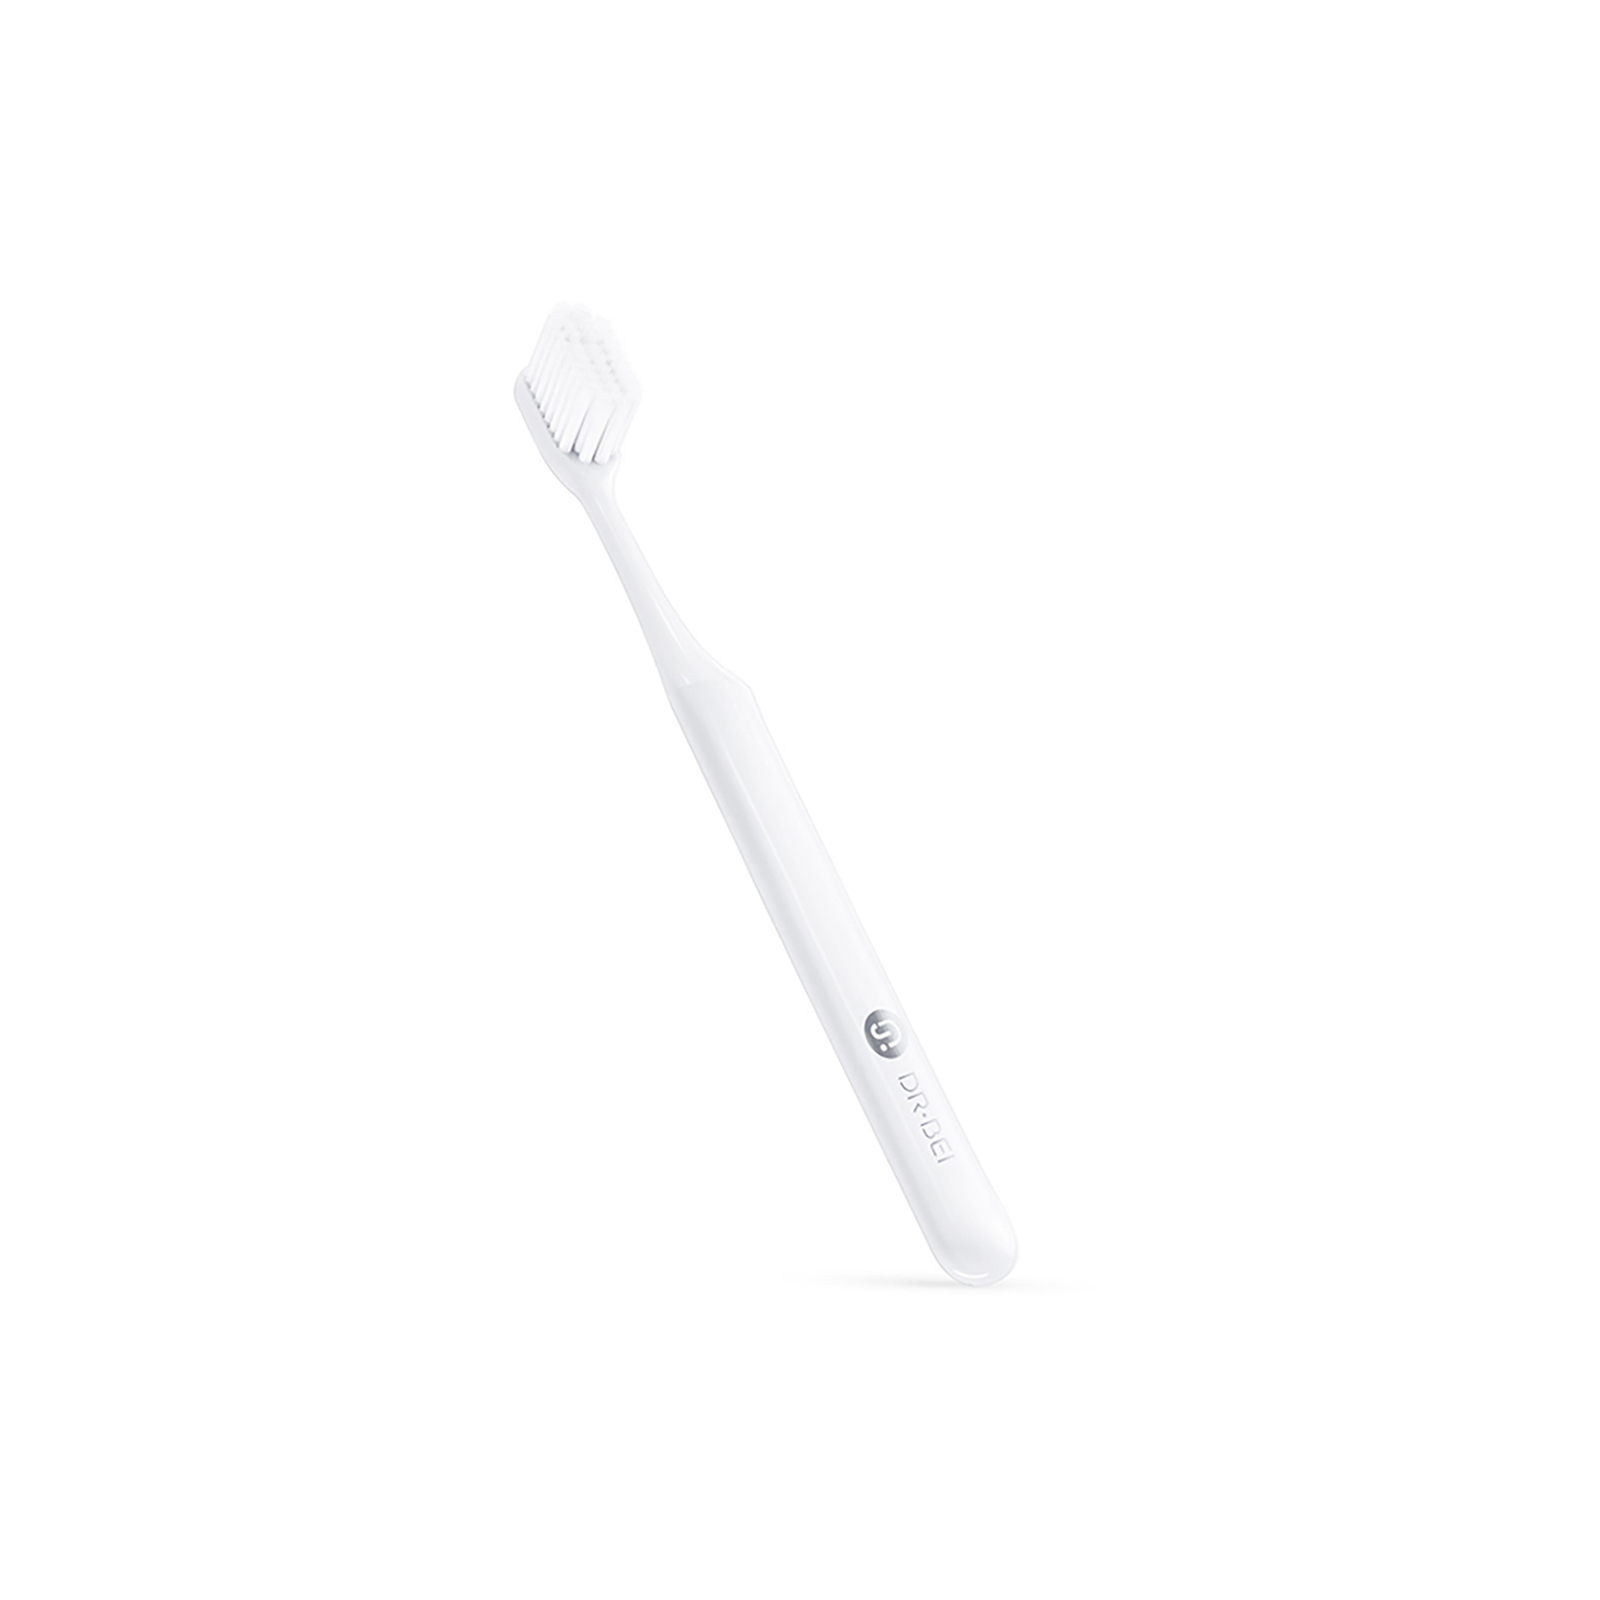 Зубна щітка Xiaomi Doctor B Grey середньої жорсткості (6970763911094)